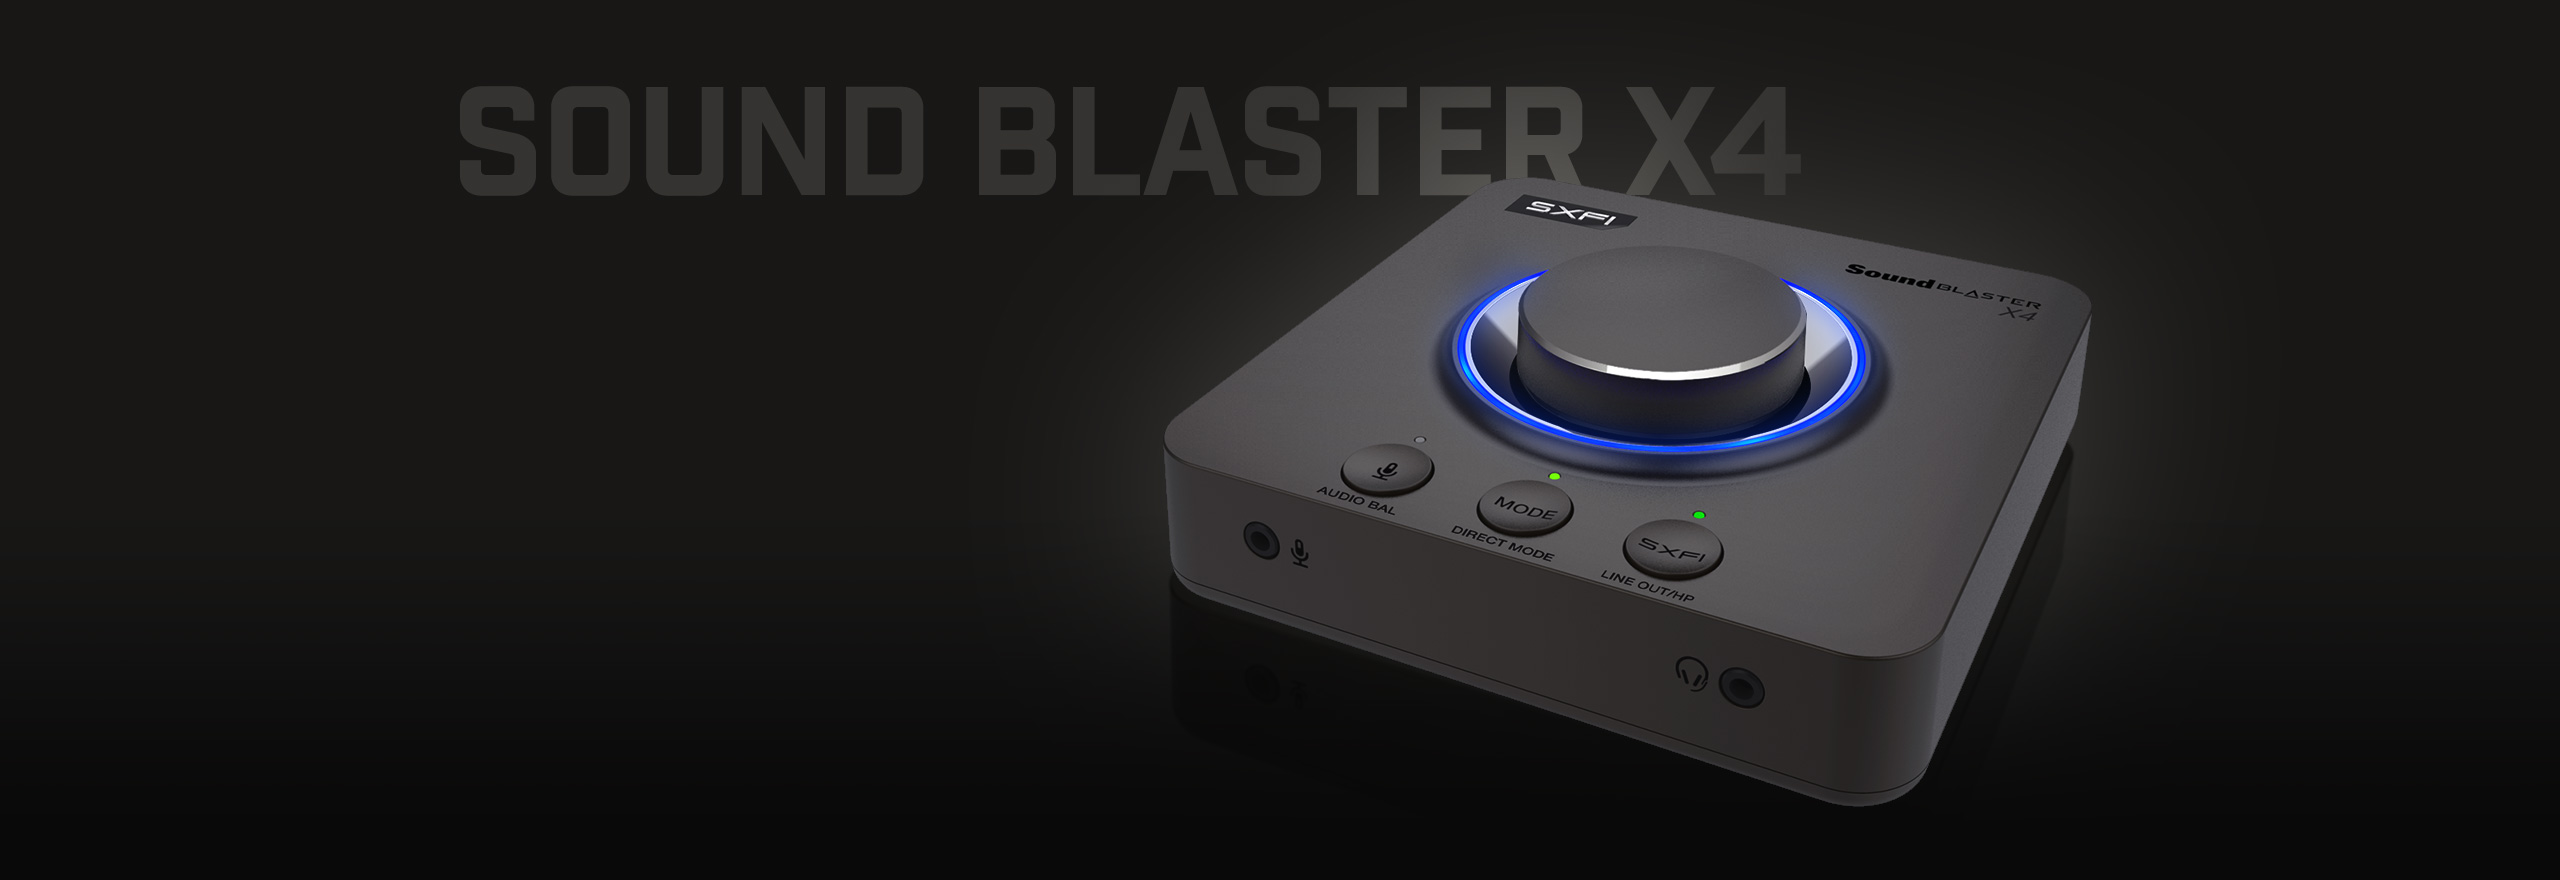 Creative Sound Blaster X4 4c90a